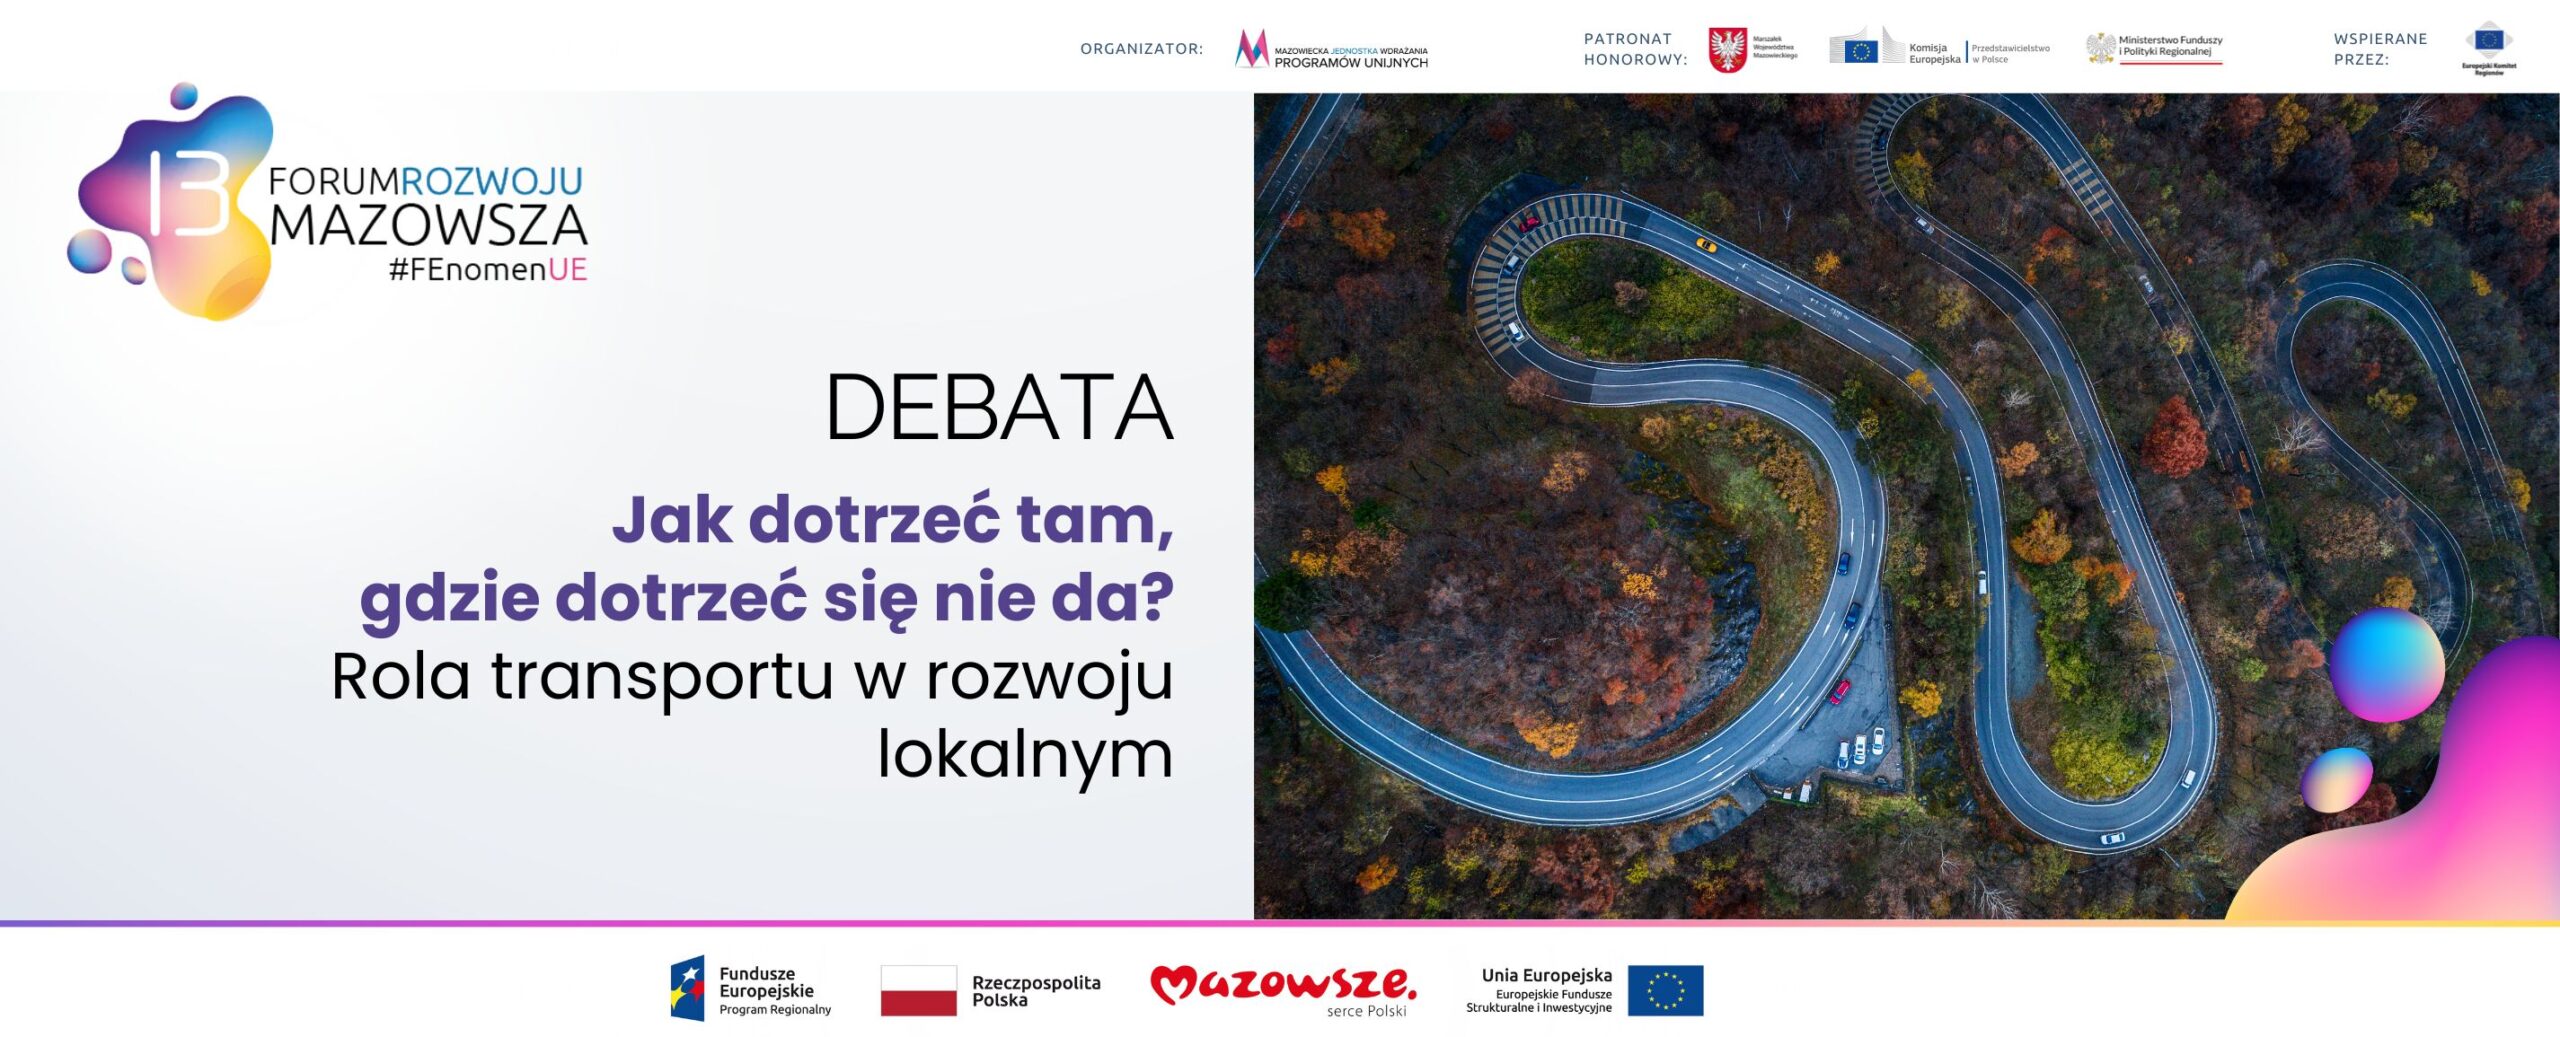 Na grafice znajduje się hasło: Debata Jak dotrzeć tam, gdzie dotrzeć się nie da? Obok zdjęcie przedstawiające kręte drogi.